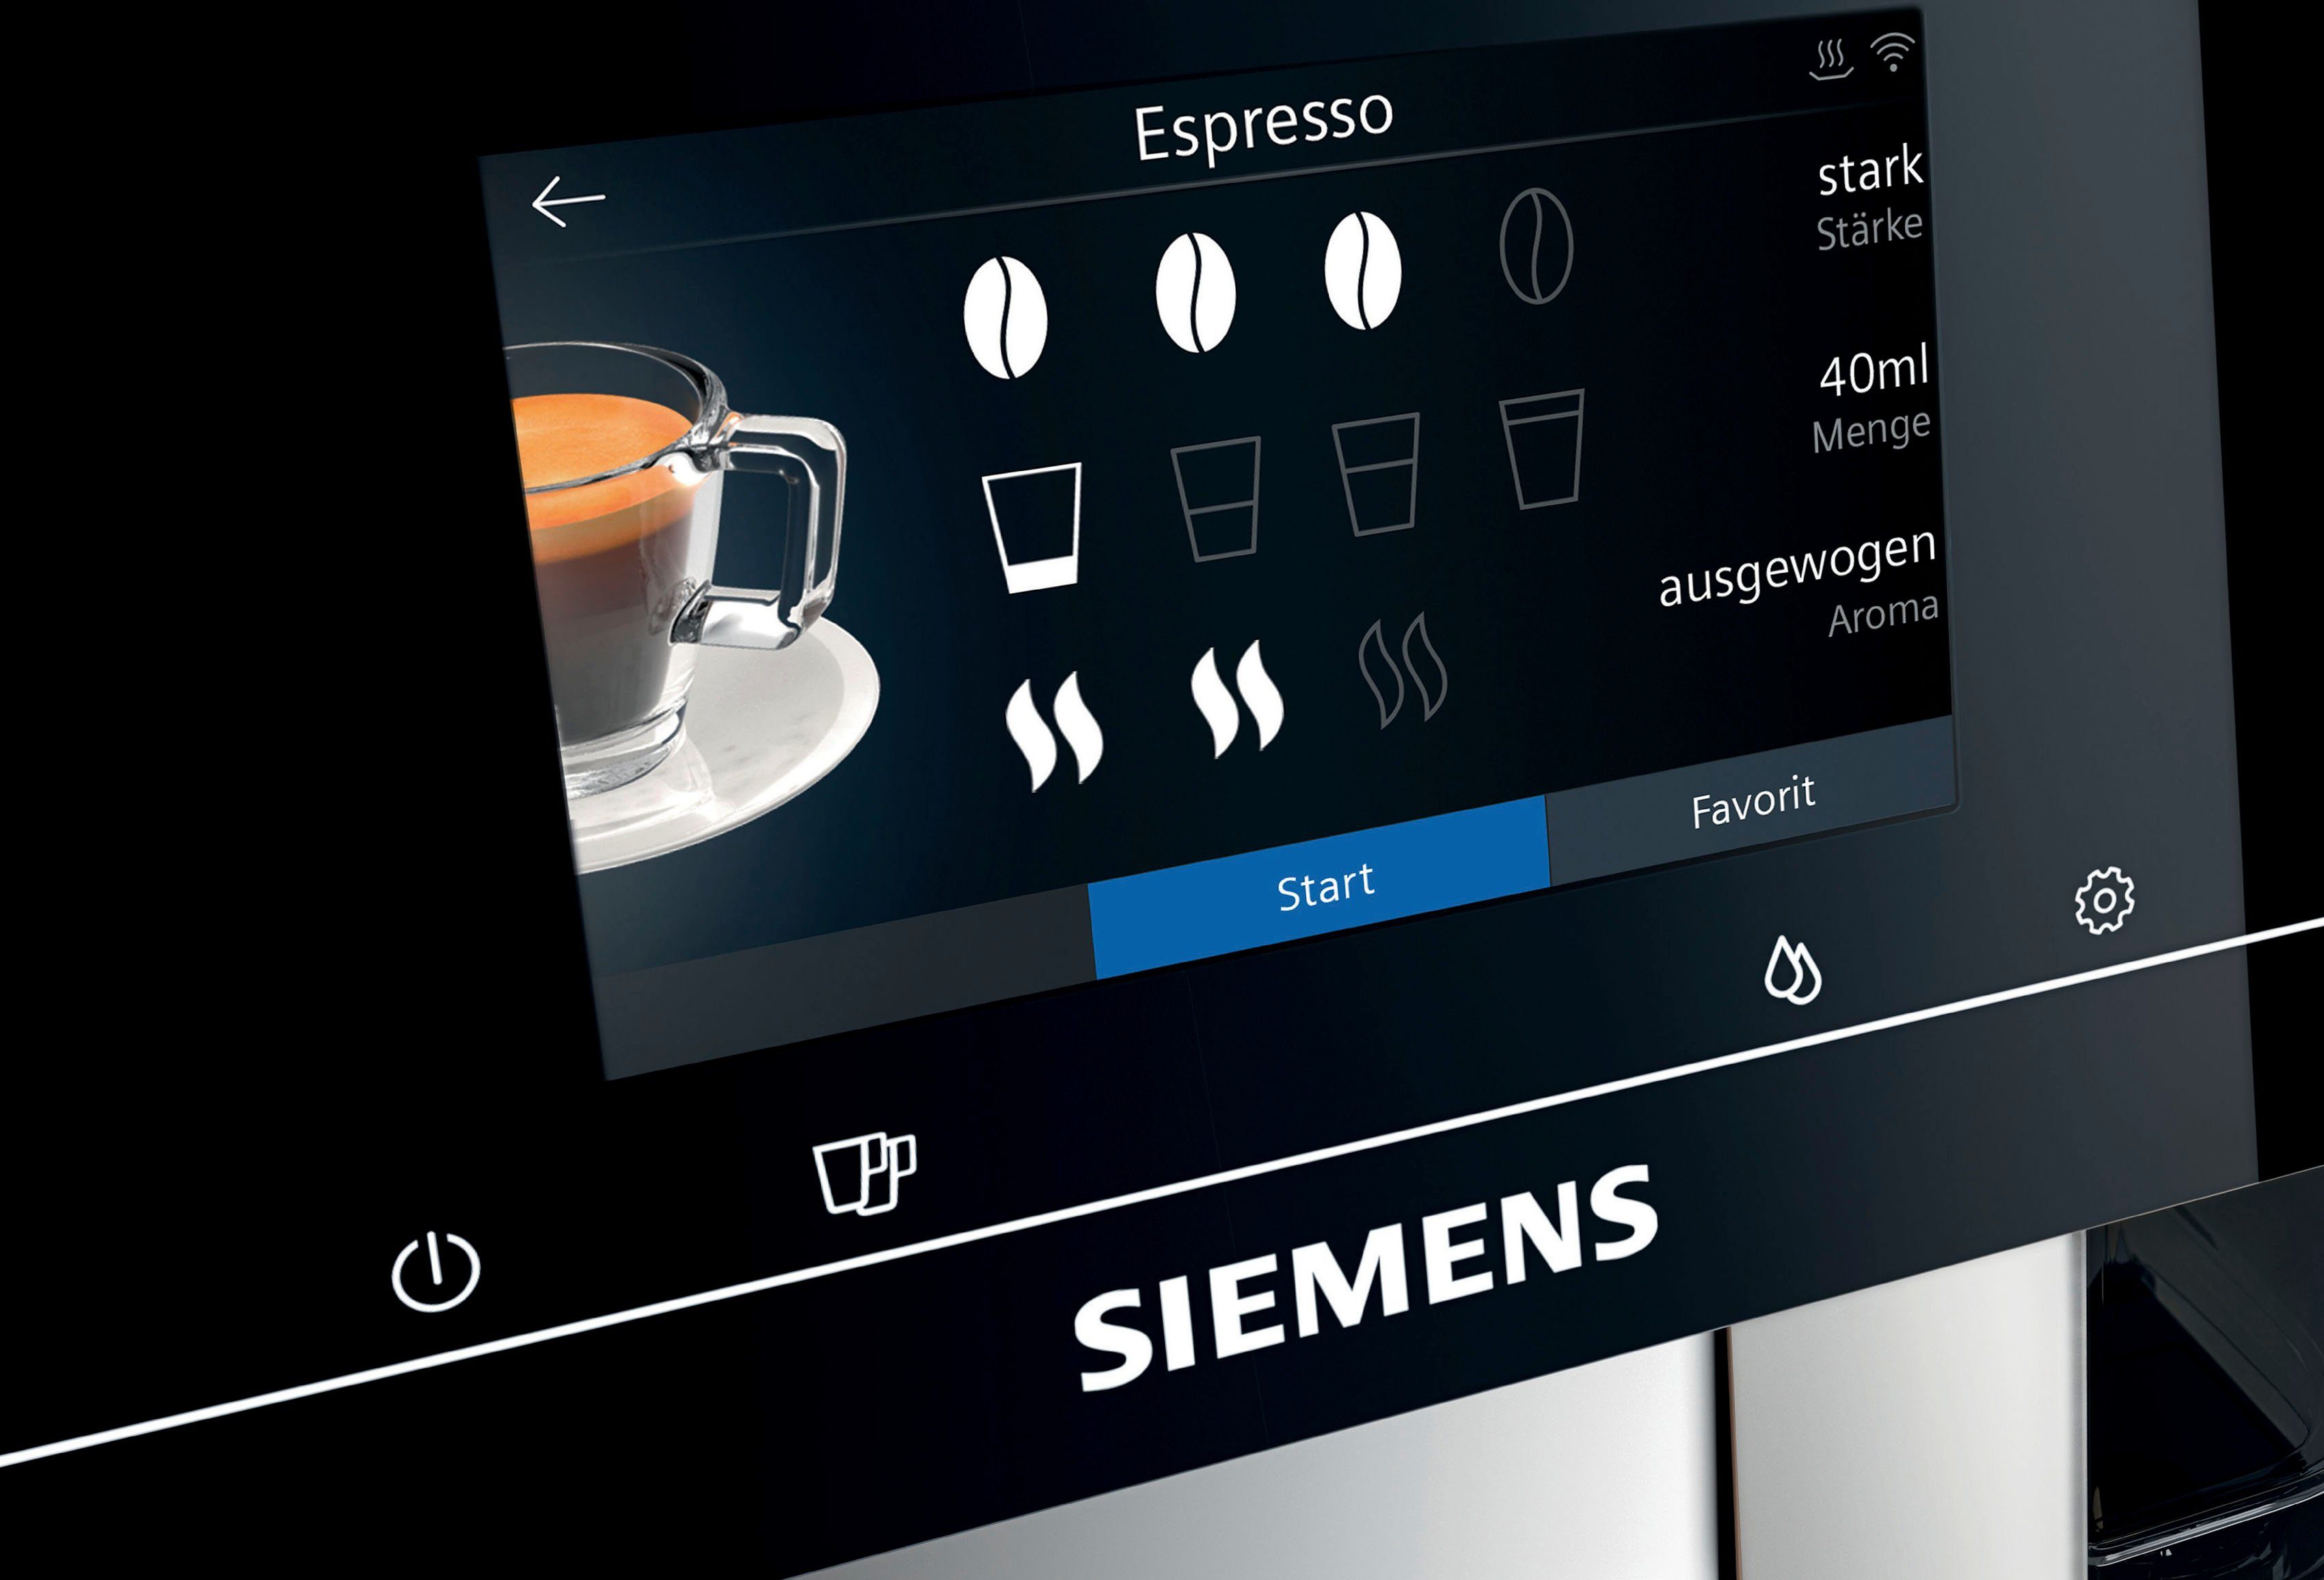 bis TP705D47, Full-Touch-Display, Milchsystem-Reinigung metallic EQ.700 Kaffeevollautomat Profile 10 SIEMENS speicherbar, Inox silber